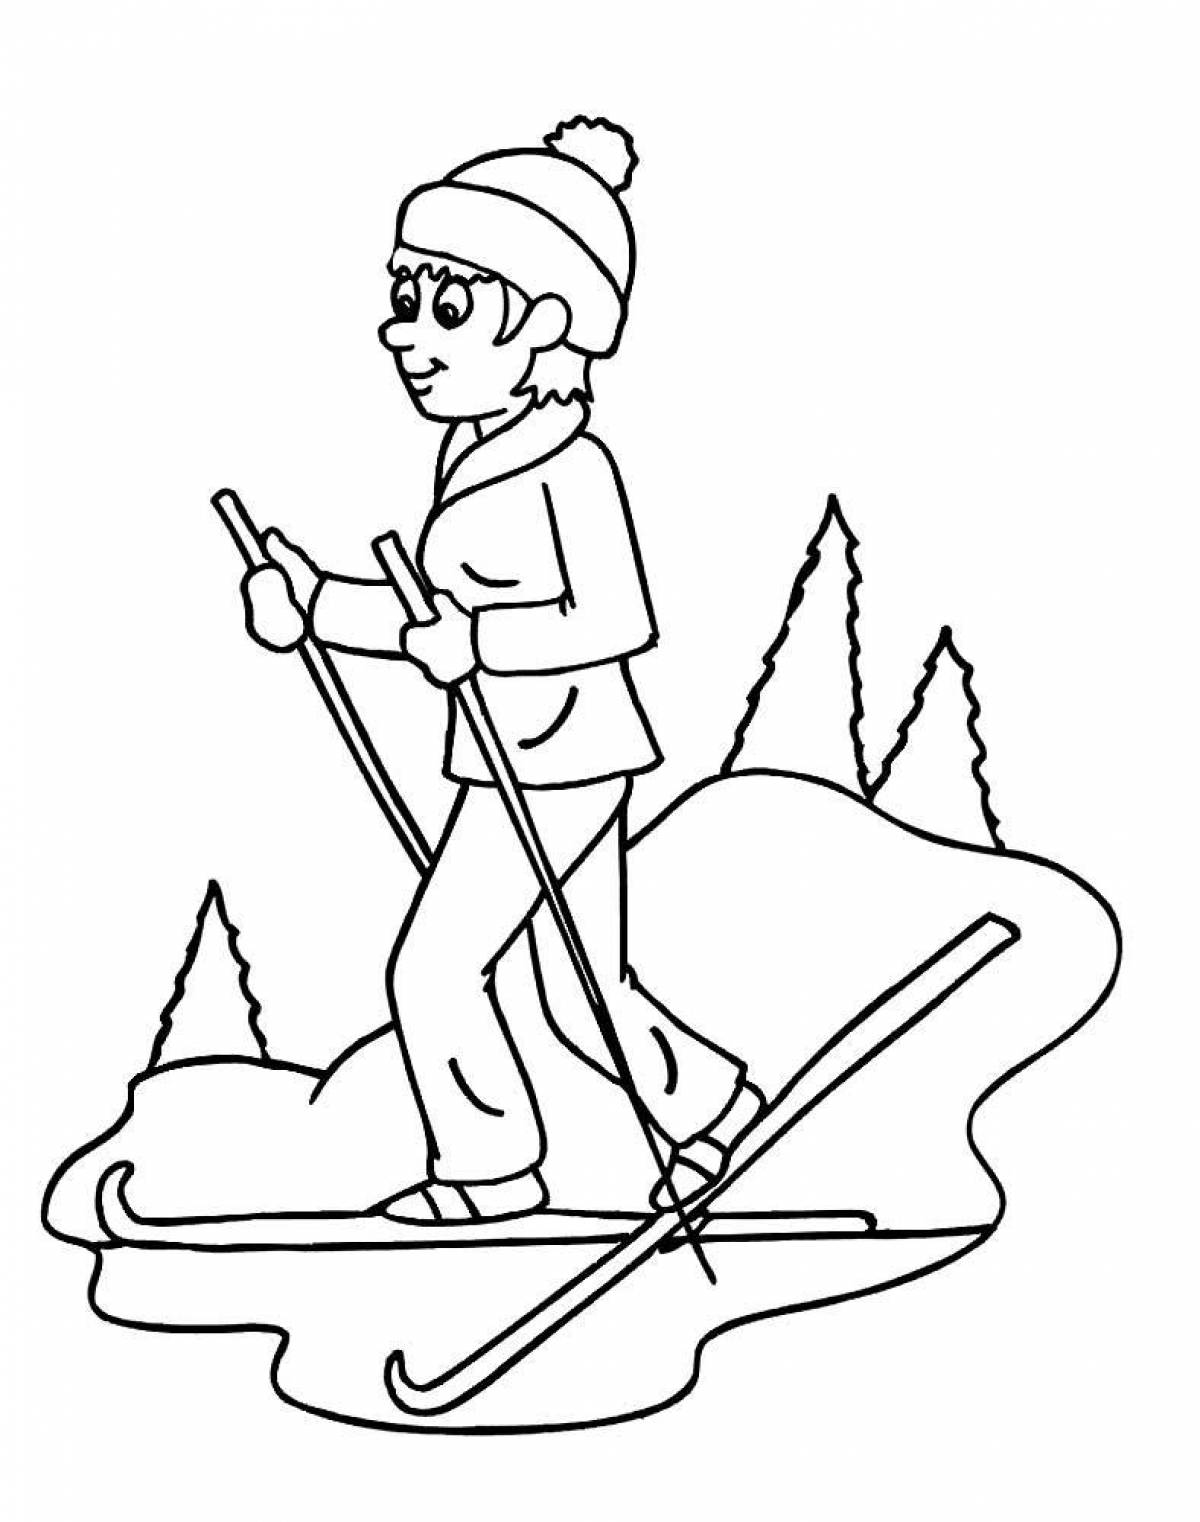 Skier for children #4